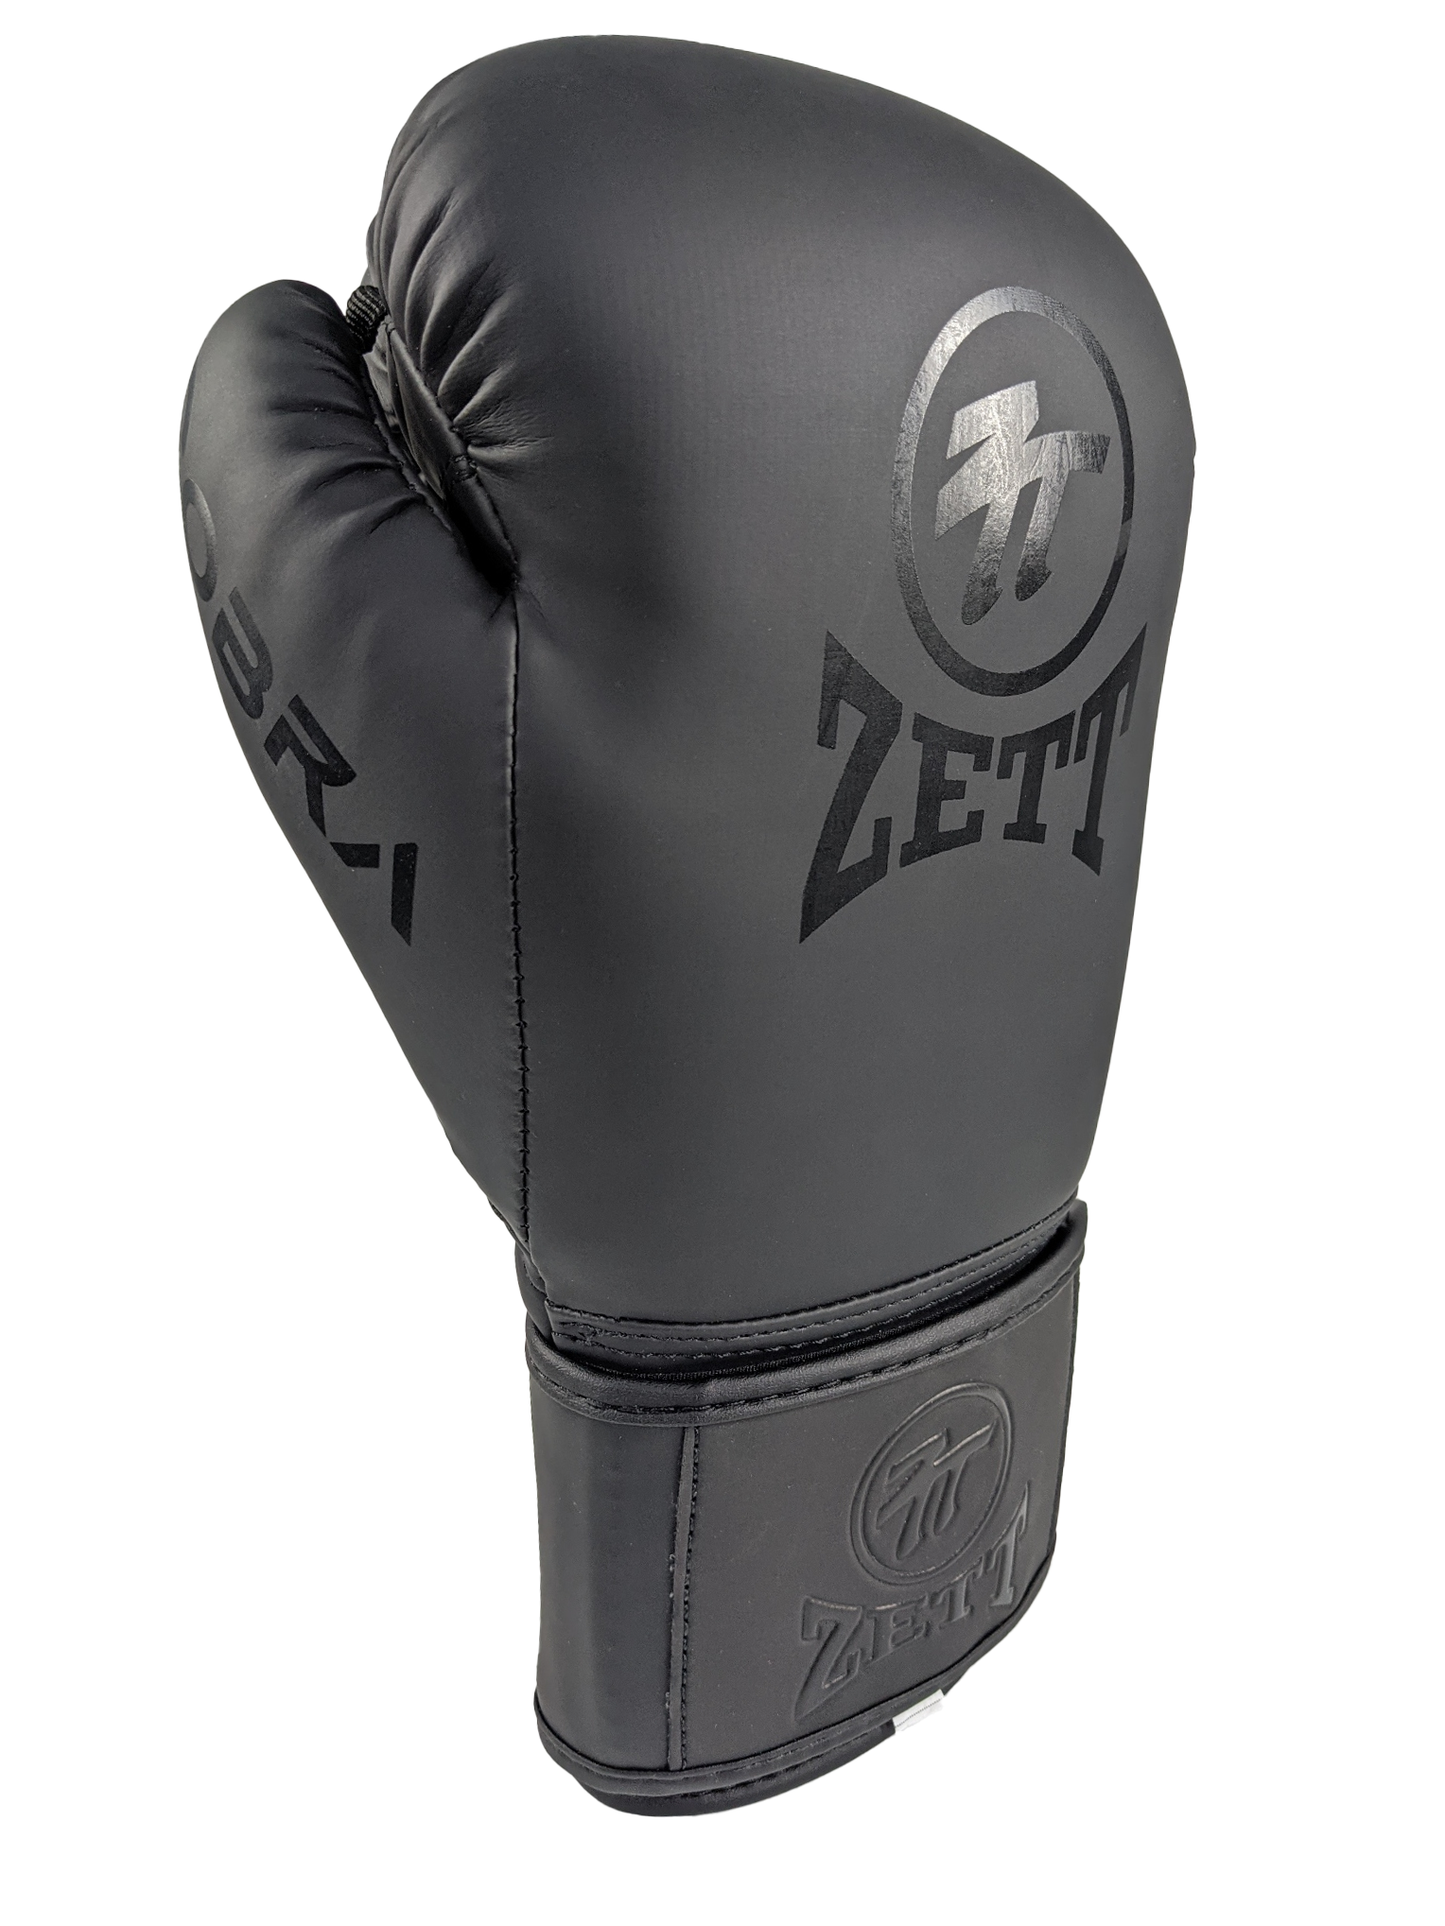 Zett Cobra Boxing Gloves